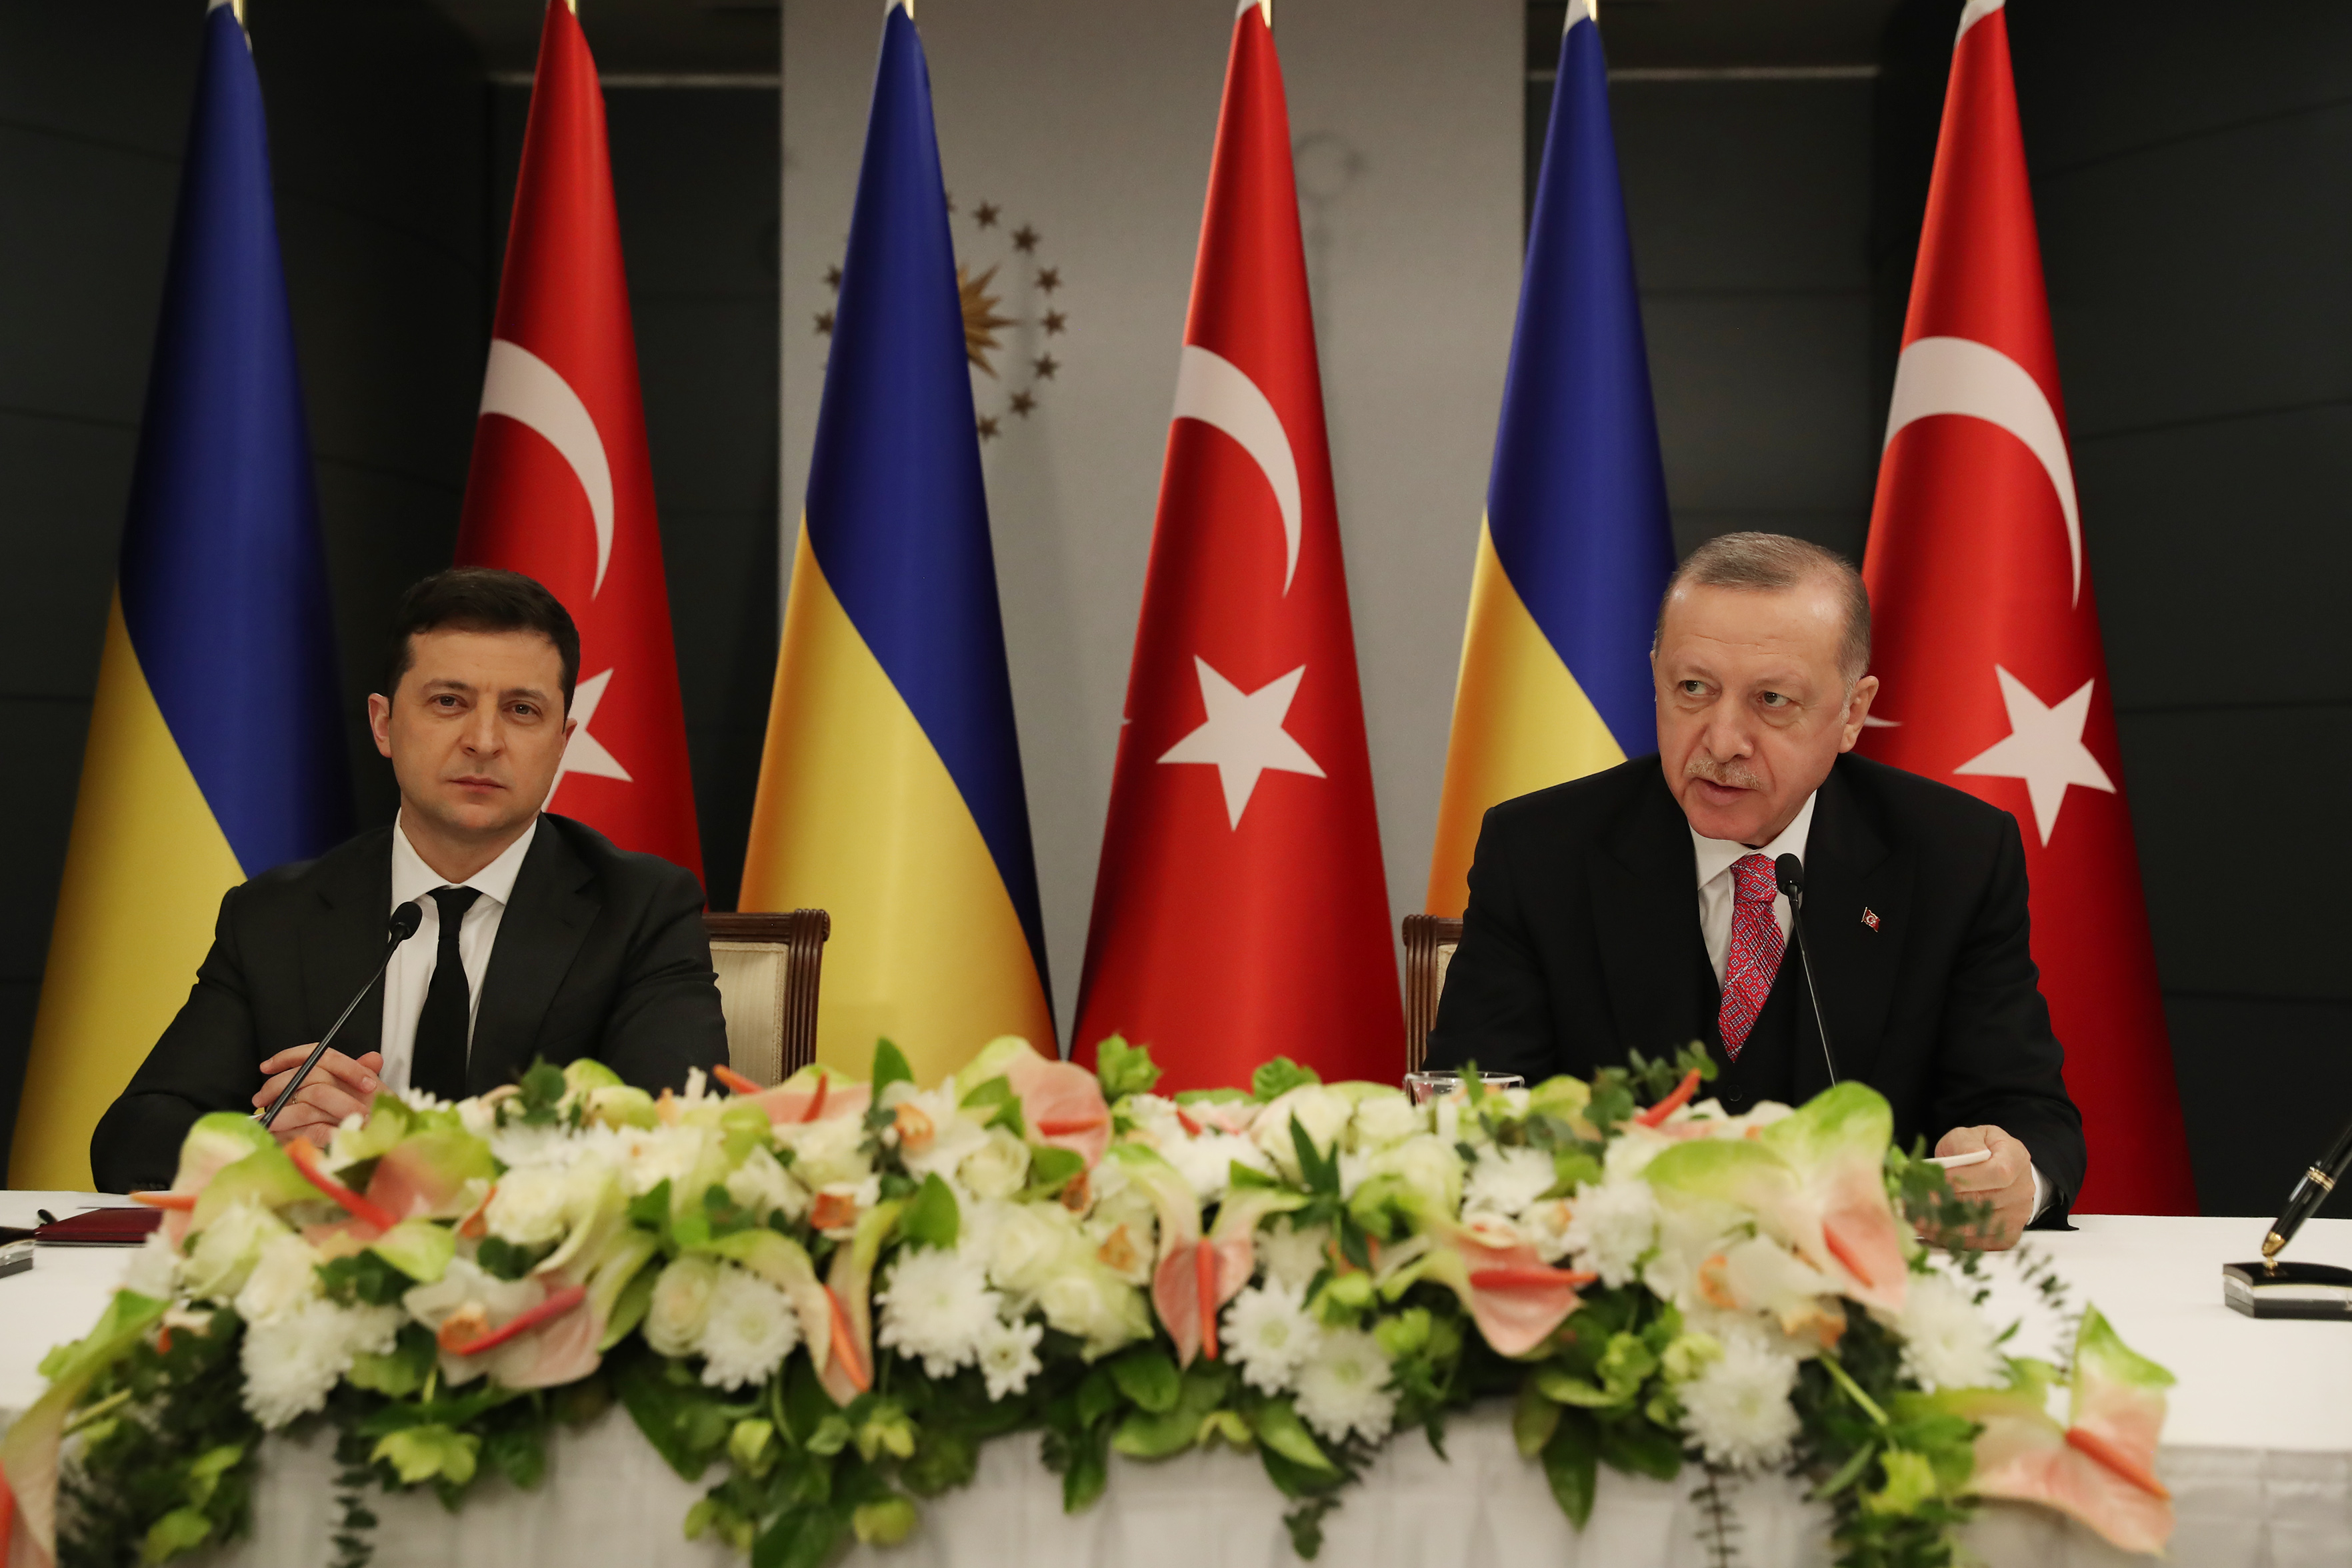 Стамбульский договор с украиной